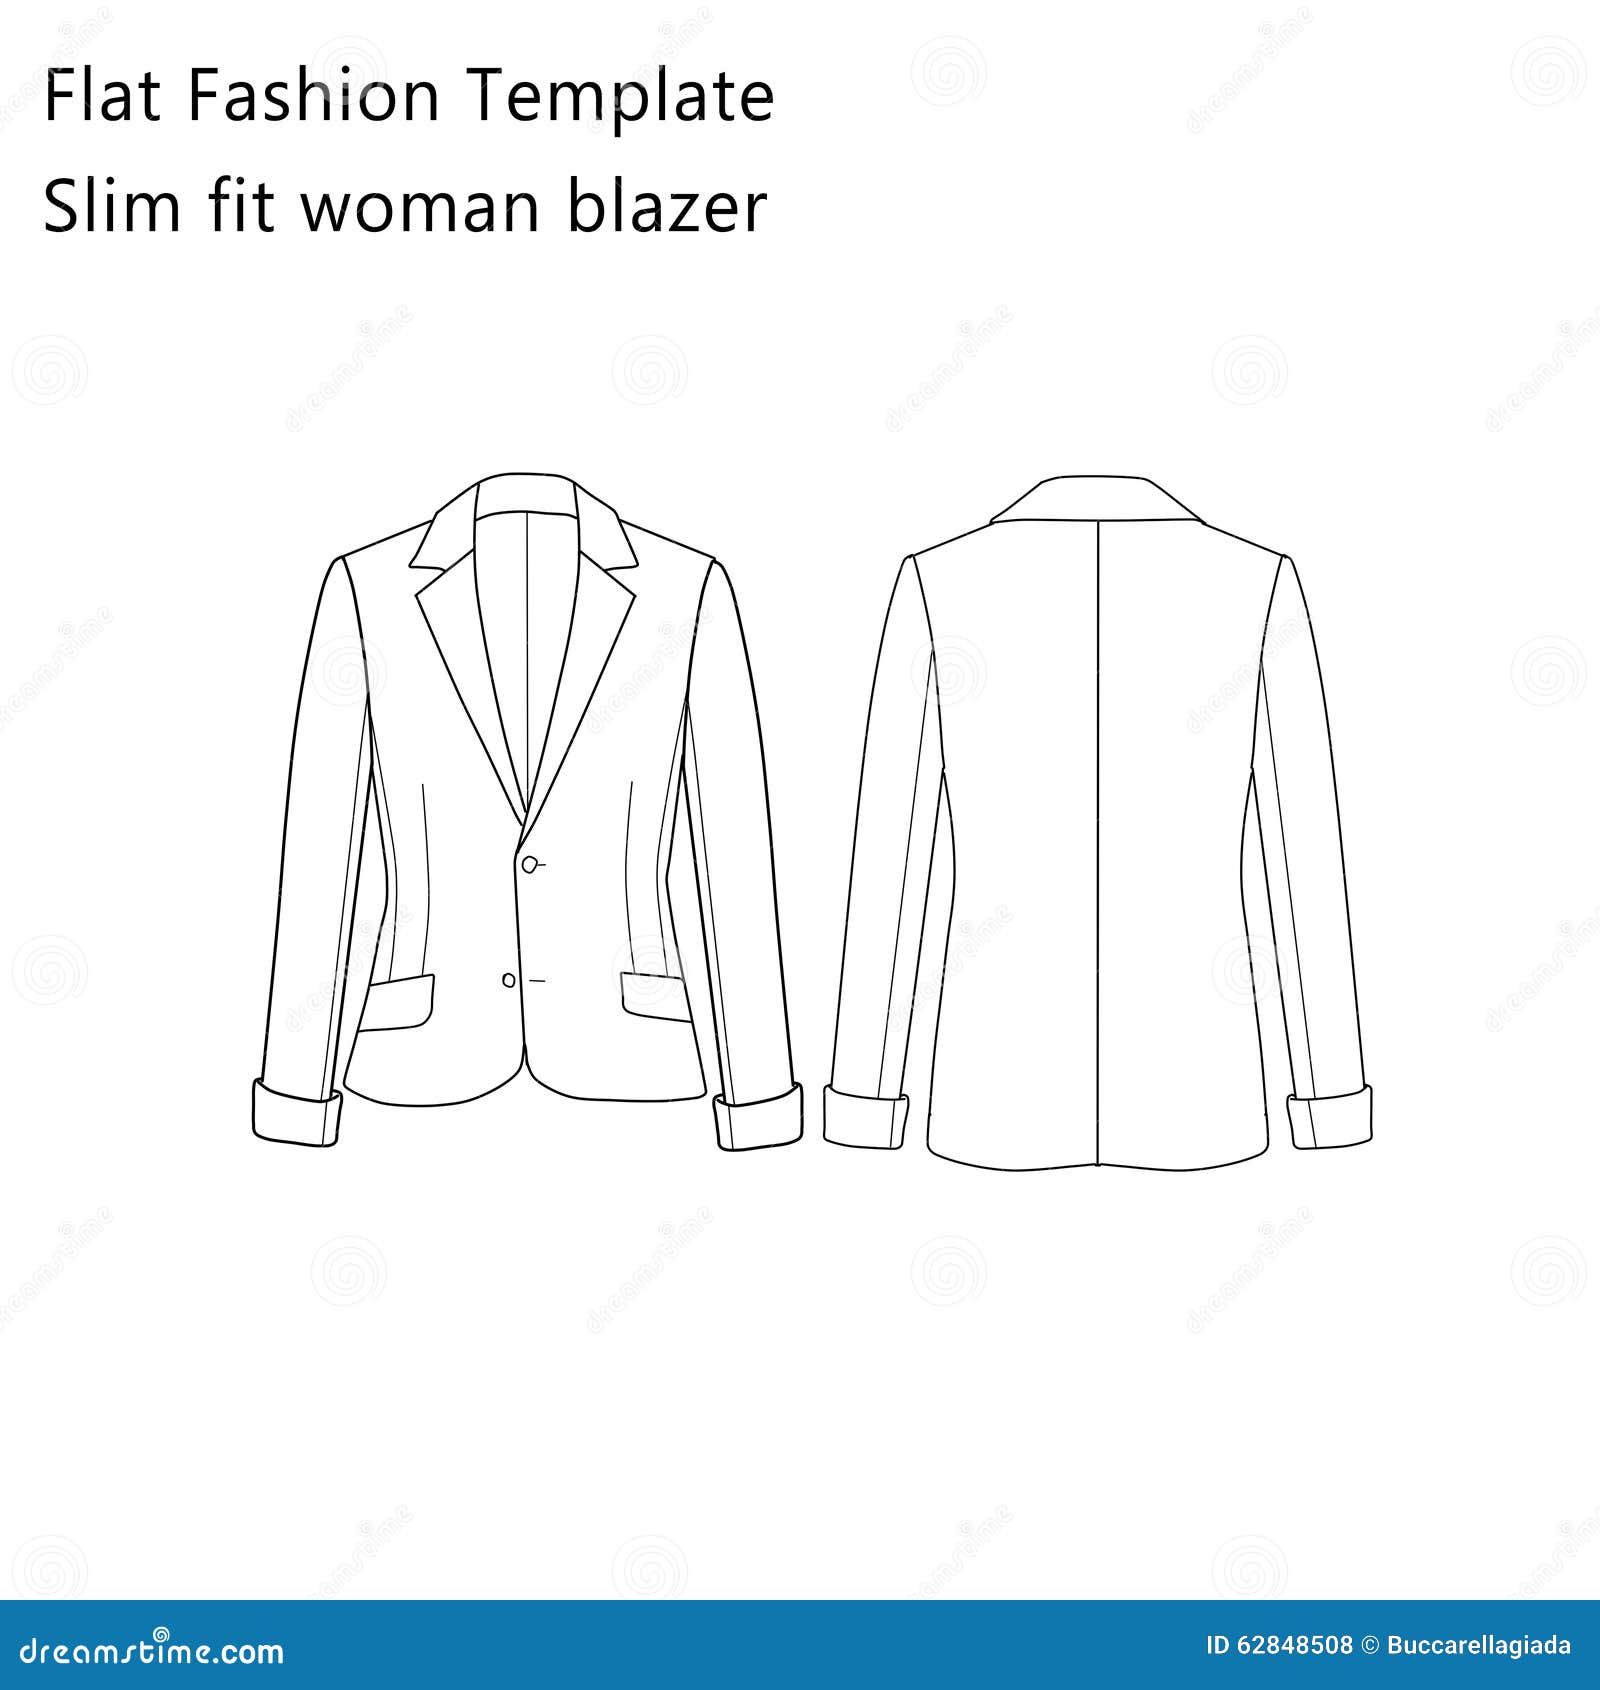 flat fashion template slim fit woman blazer sketch 62848508